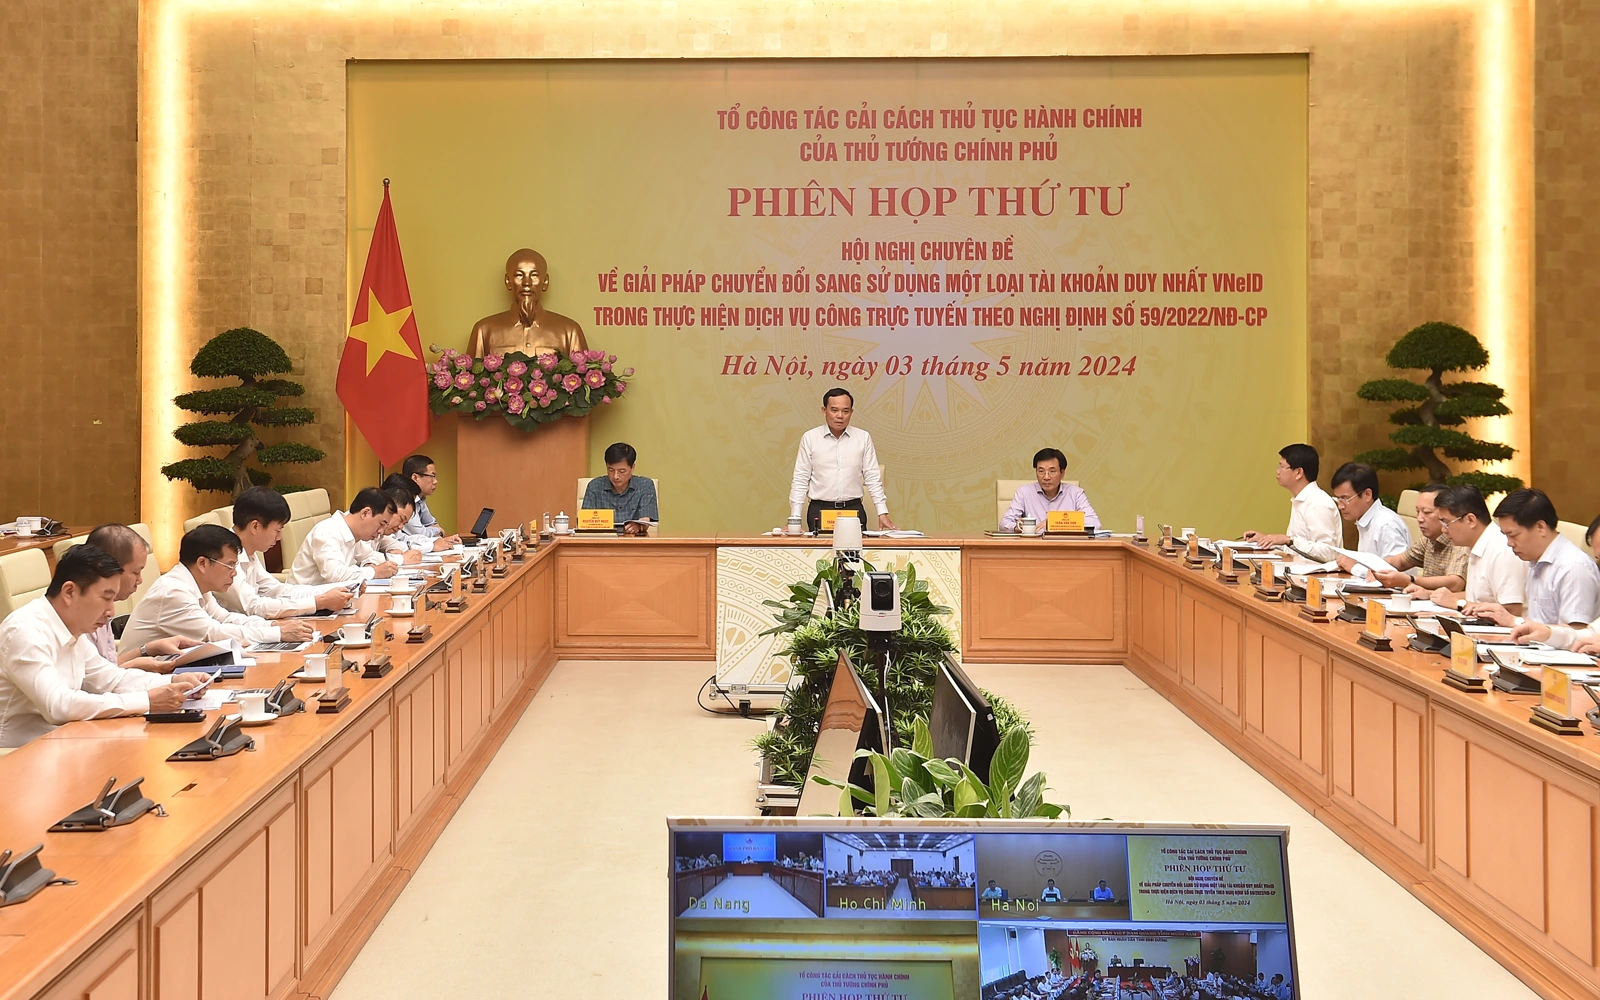 Toàn cảnh phiên họp thứ tư của Tổ công tác Cải cách thủ tục hành chính của Thủ tướng (Ảnh: Hải Minh).